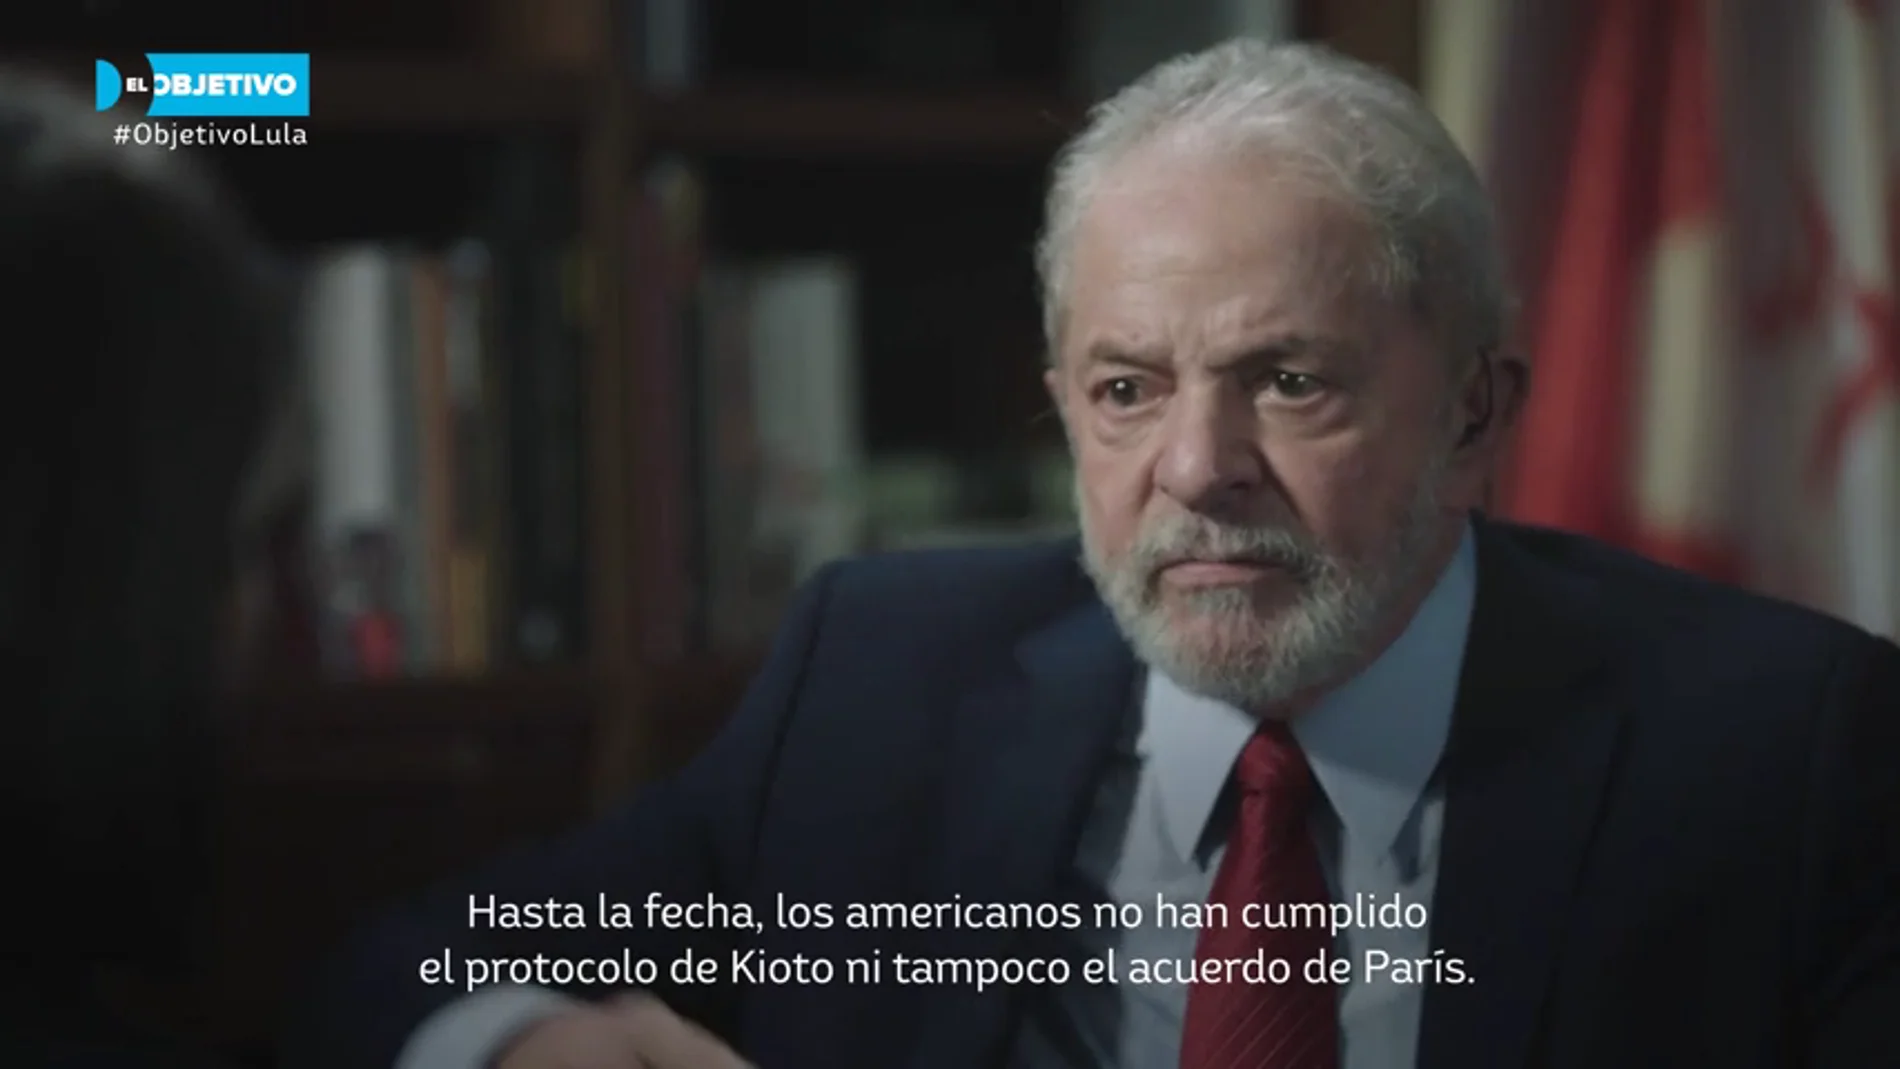 La advertencia de Lula da Silva sobre la emergencia climática: "Cuando se destruya el planeta, tanto pobres como ricos se hundirán"